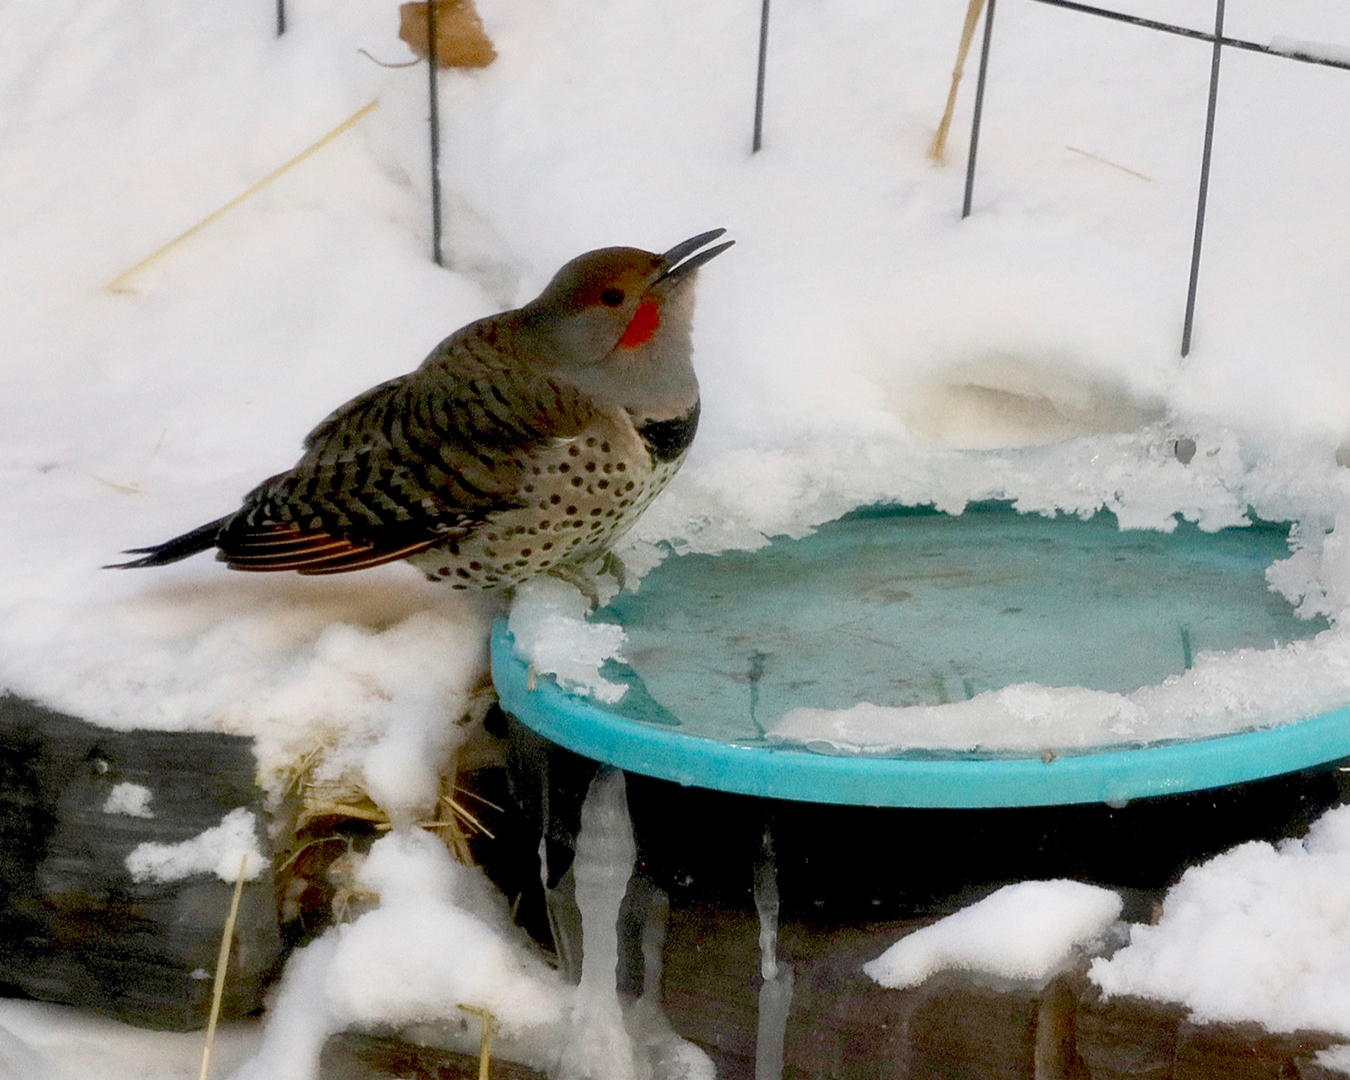 Flicker in winter at a snow-covered birdbath